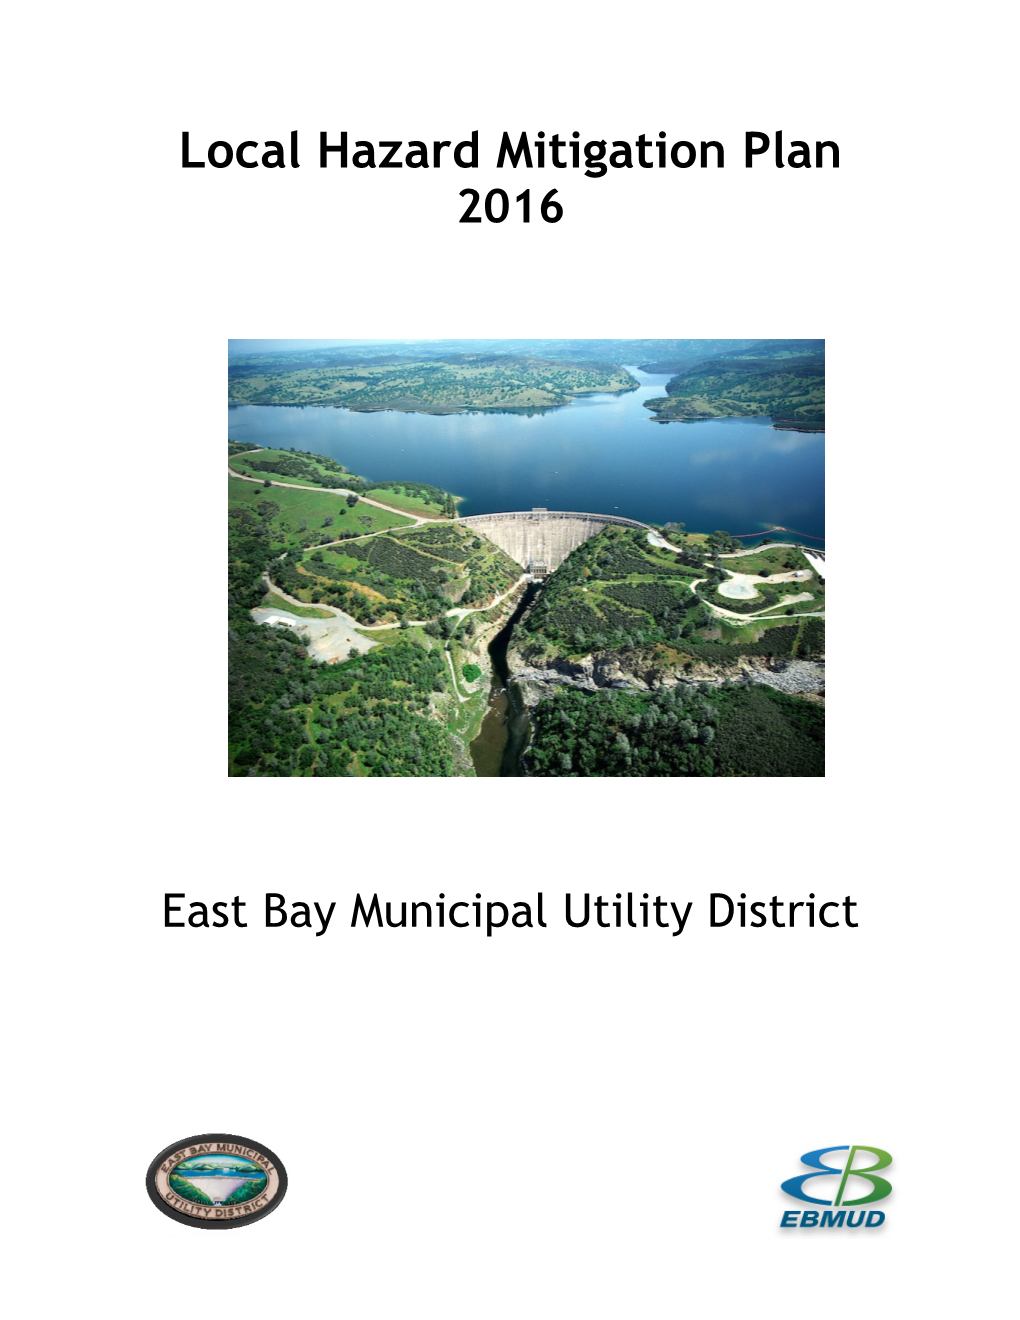 Local Hazard Mitigation Plan 2016